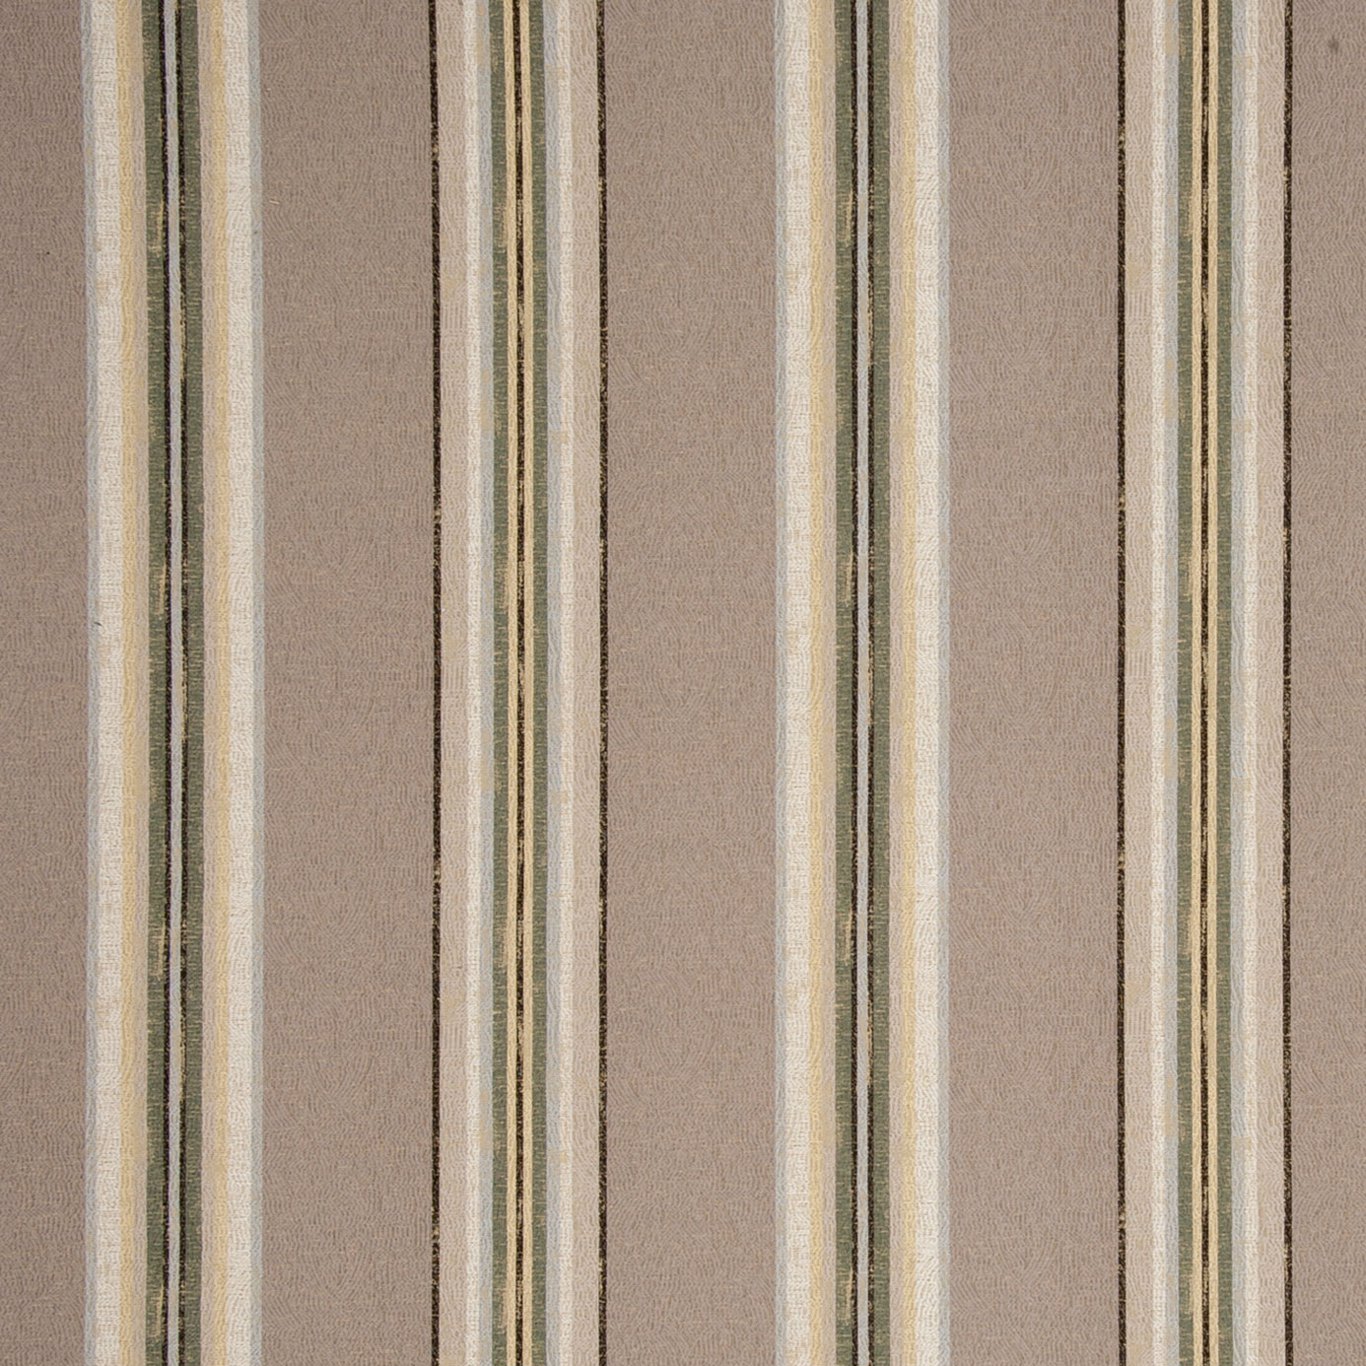 Hattusa Cinder Fabric by CNC